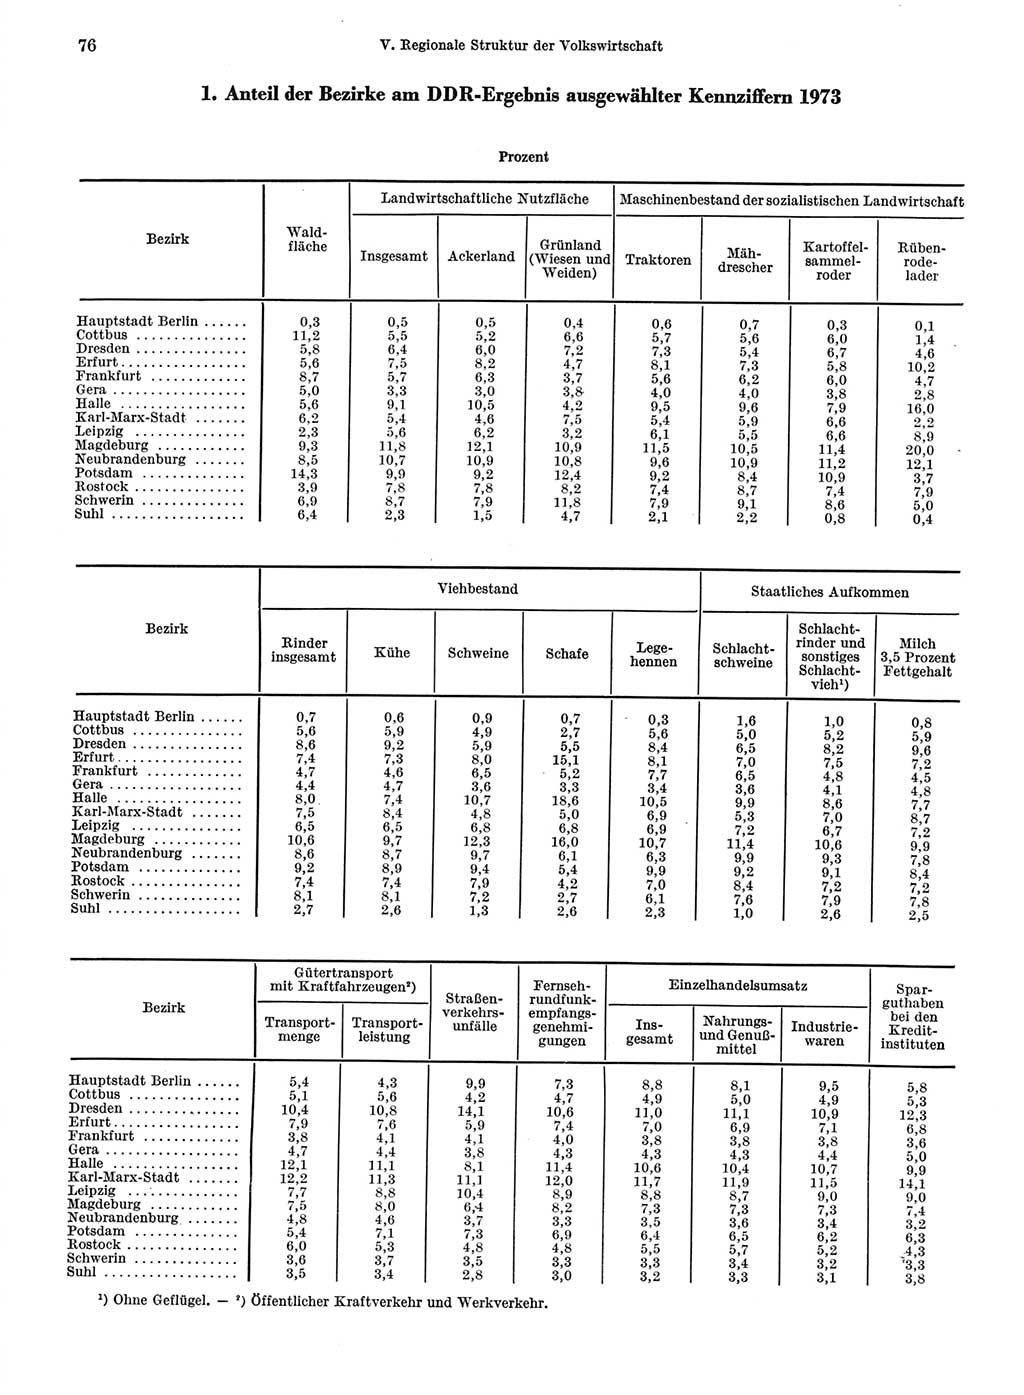 Statistisches Jahrbuch der Deutschen Demokratischen Republik (DDR) 1974, Seite 76 (Stat. Jb. DDR 1974, S. 76)